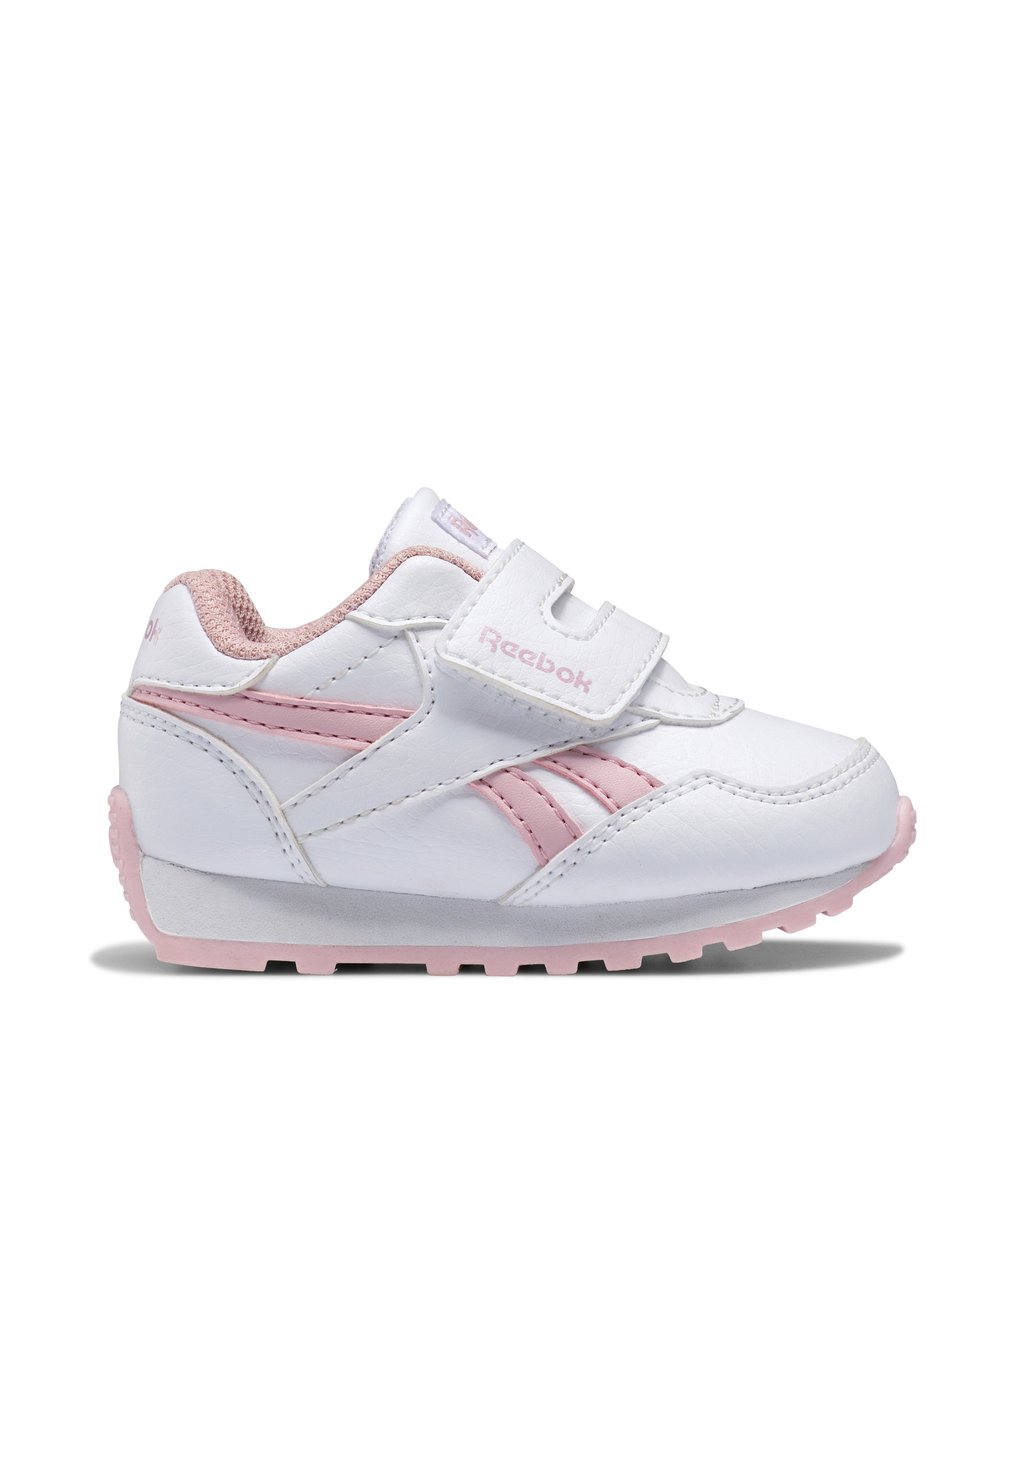 Обувь для ходьбы Non Football Royal Rewind Reebok, цвет cloud white classic pink cloud white